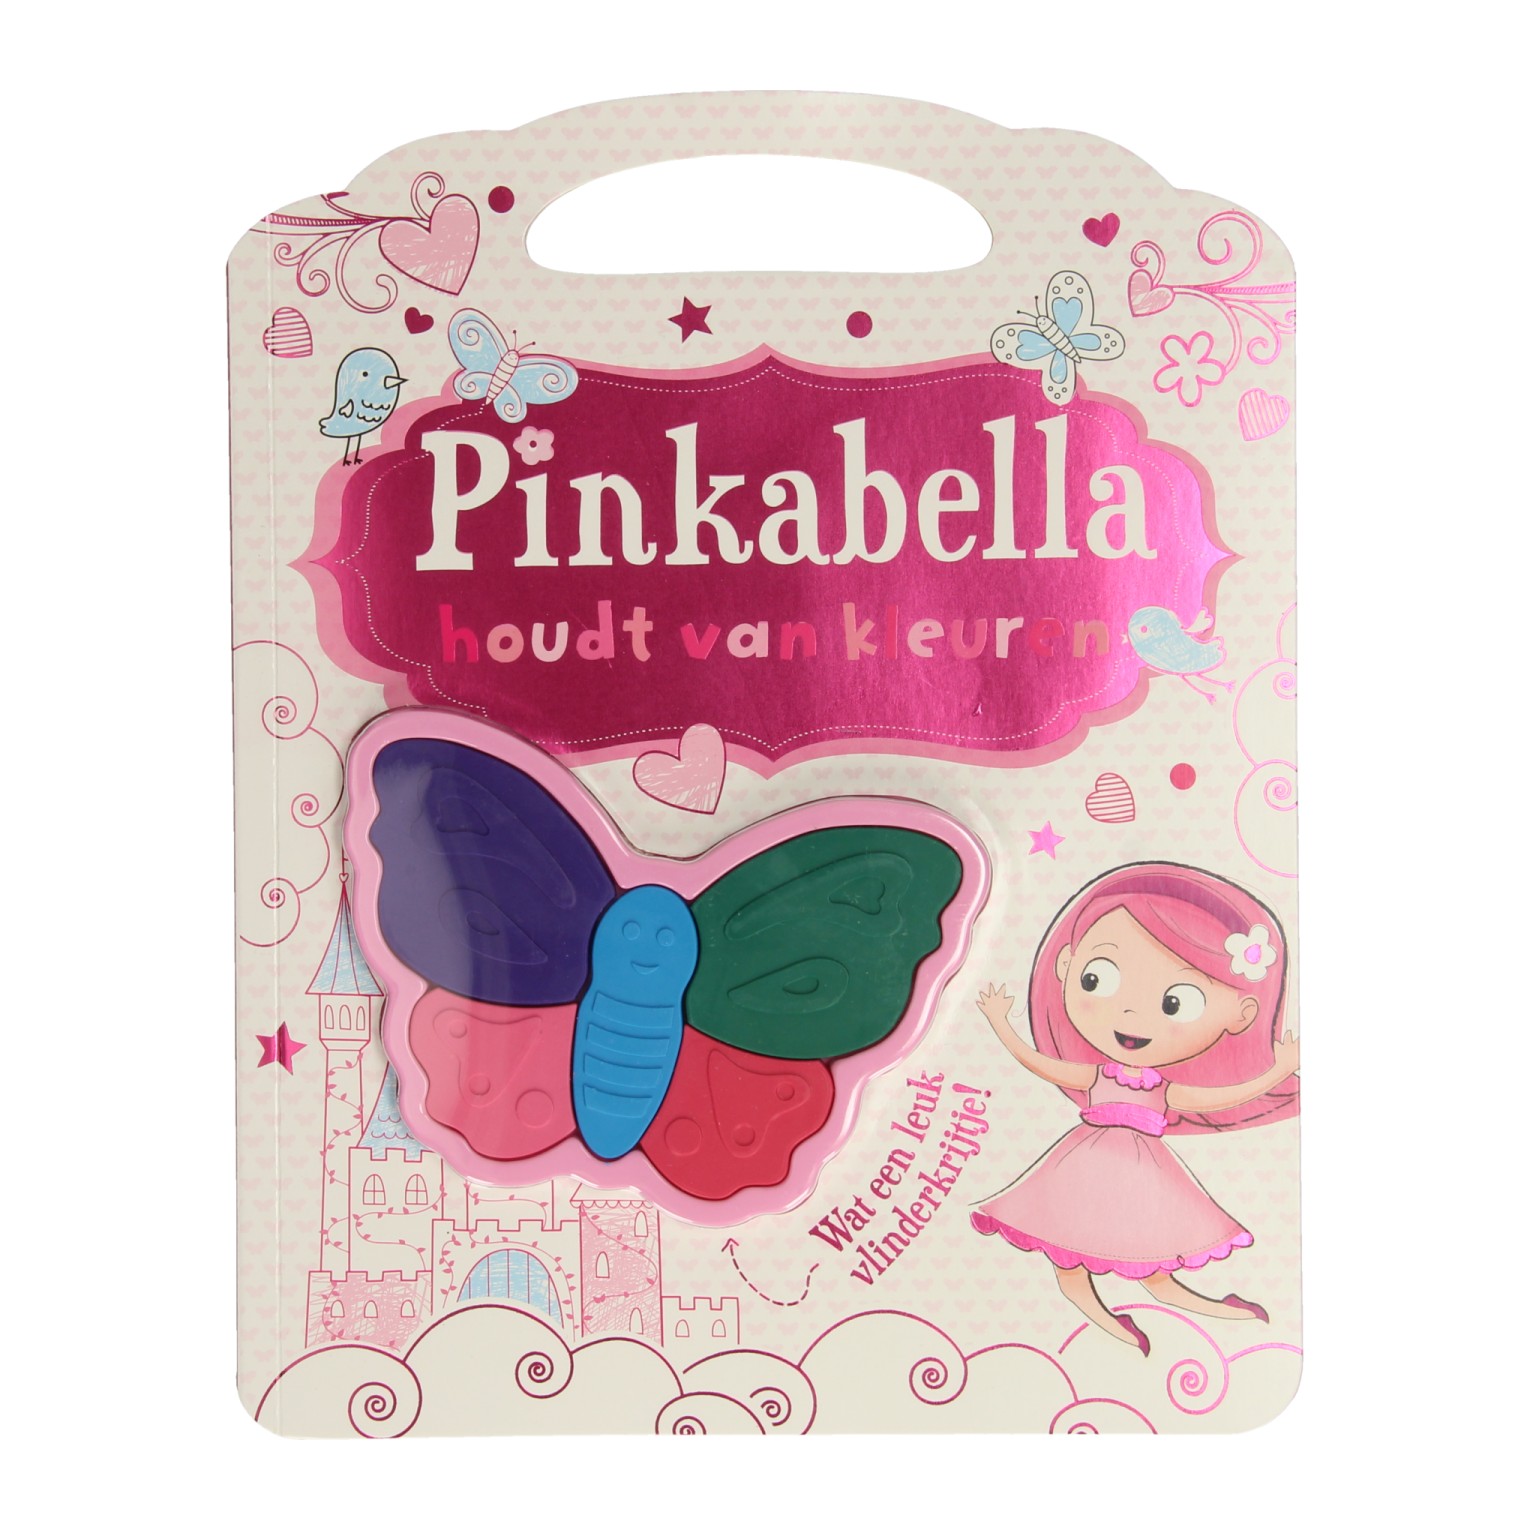 Pinkabella aime colorier avec des crayons de cire en forme de papillon